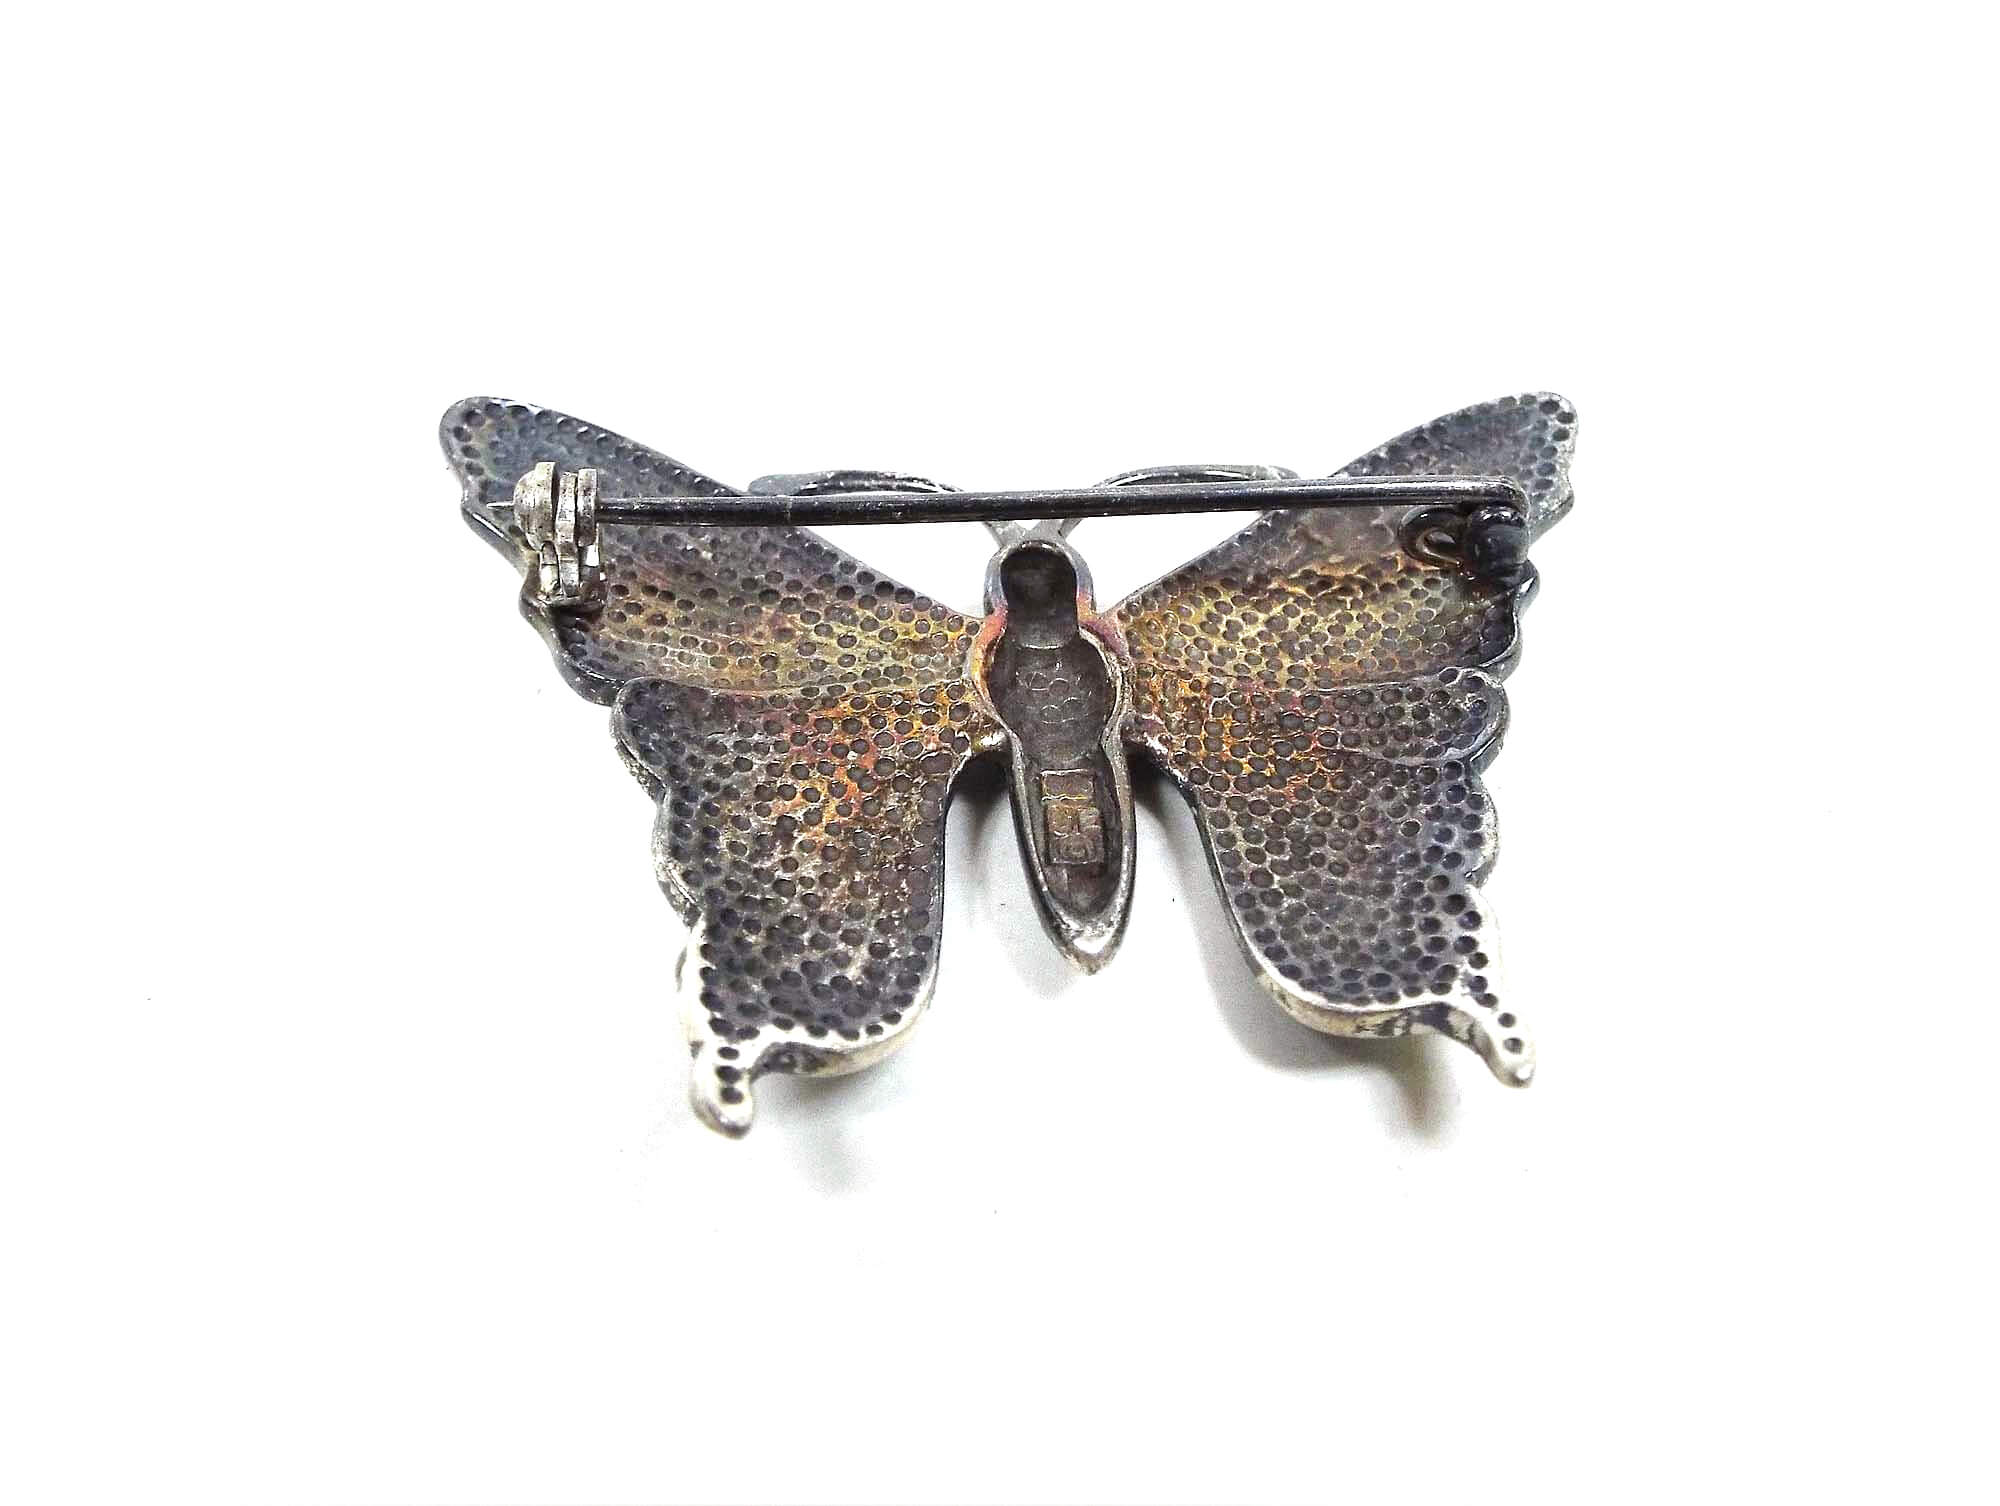 Broche de mariposa Vintage de plata de ley SE con concha de abulón incrustada, joyería Hippie bohemia del suroeste de los años 80 Retro